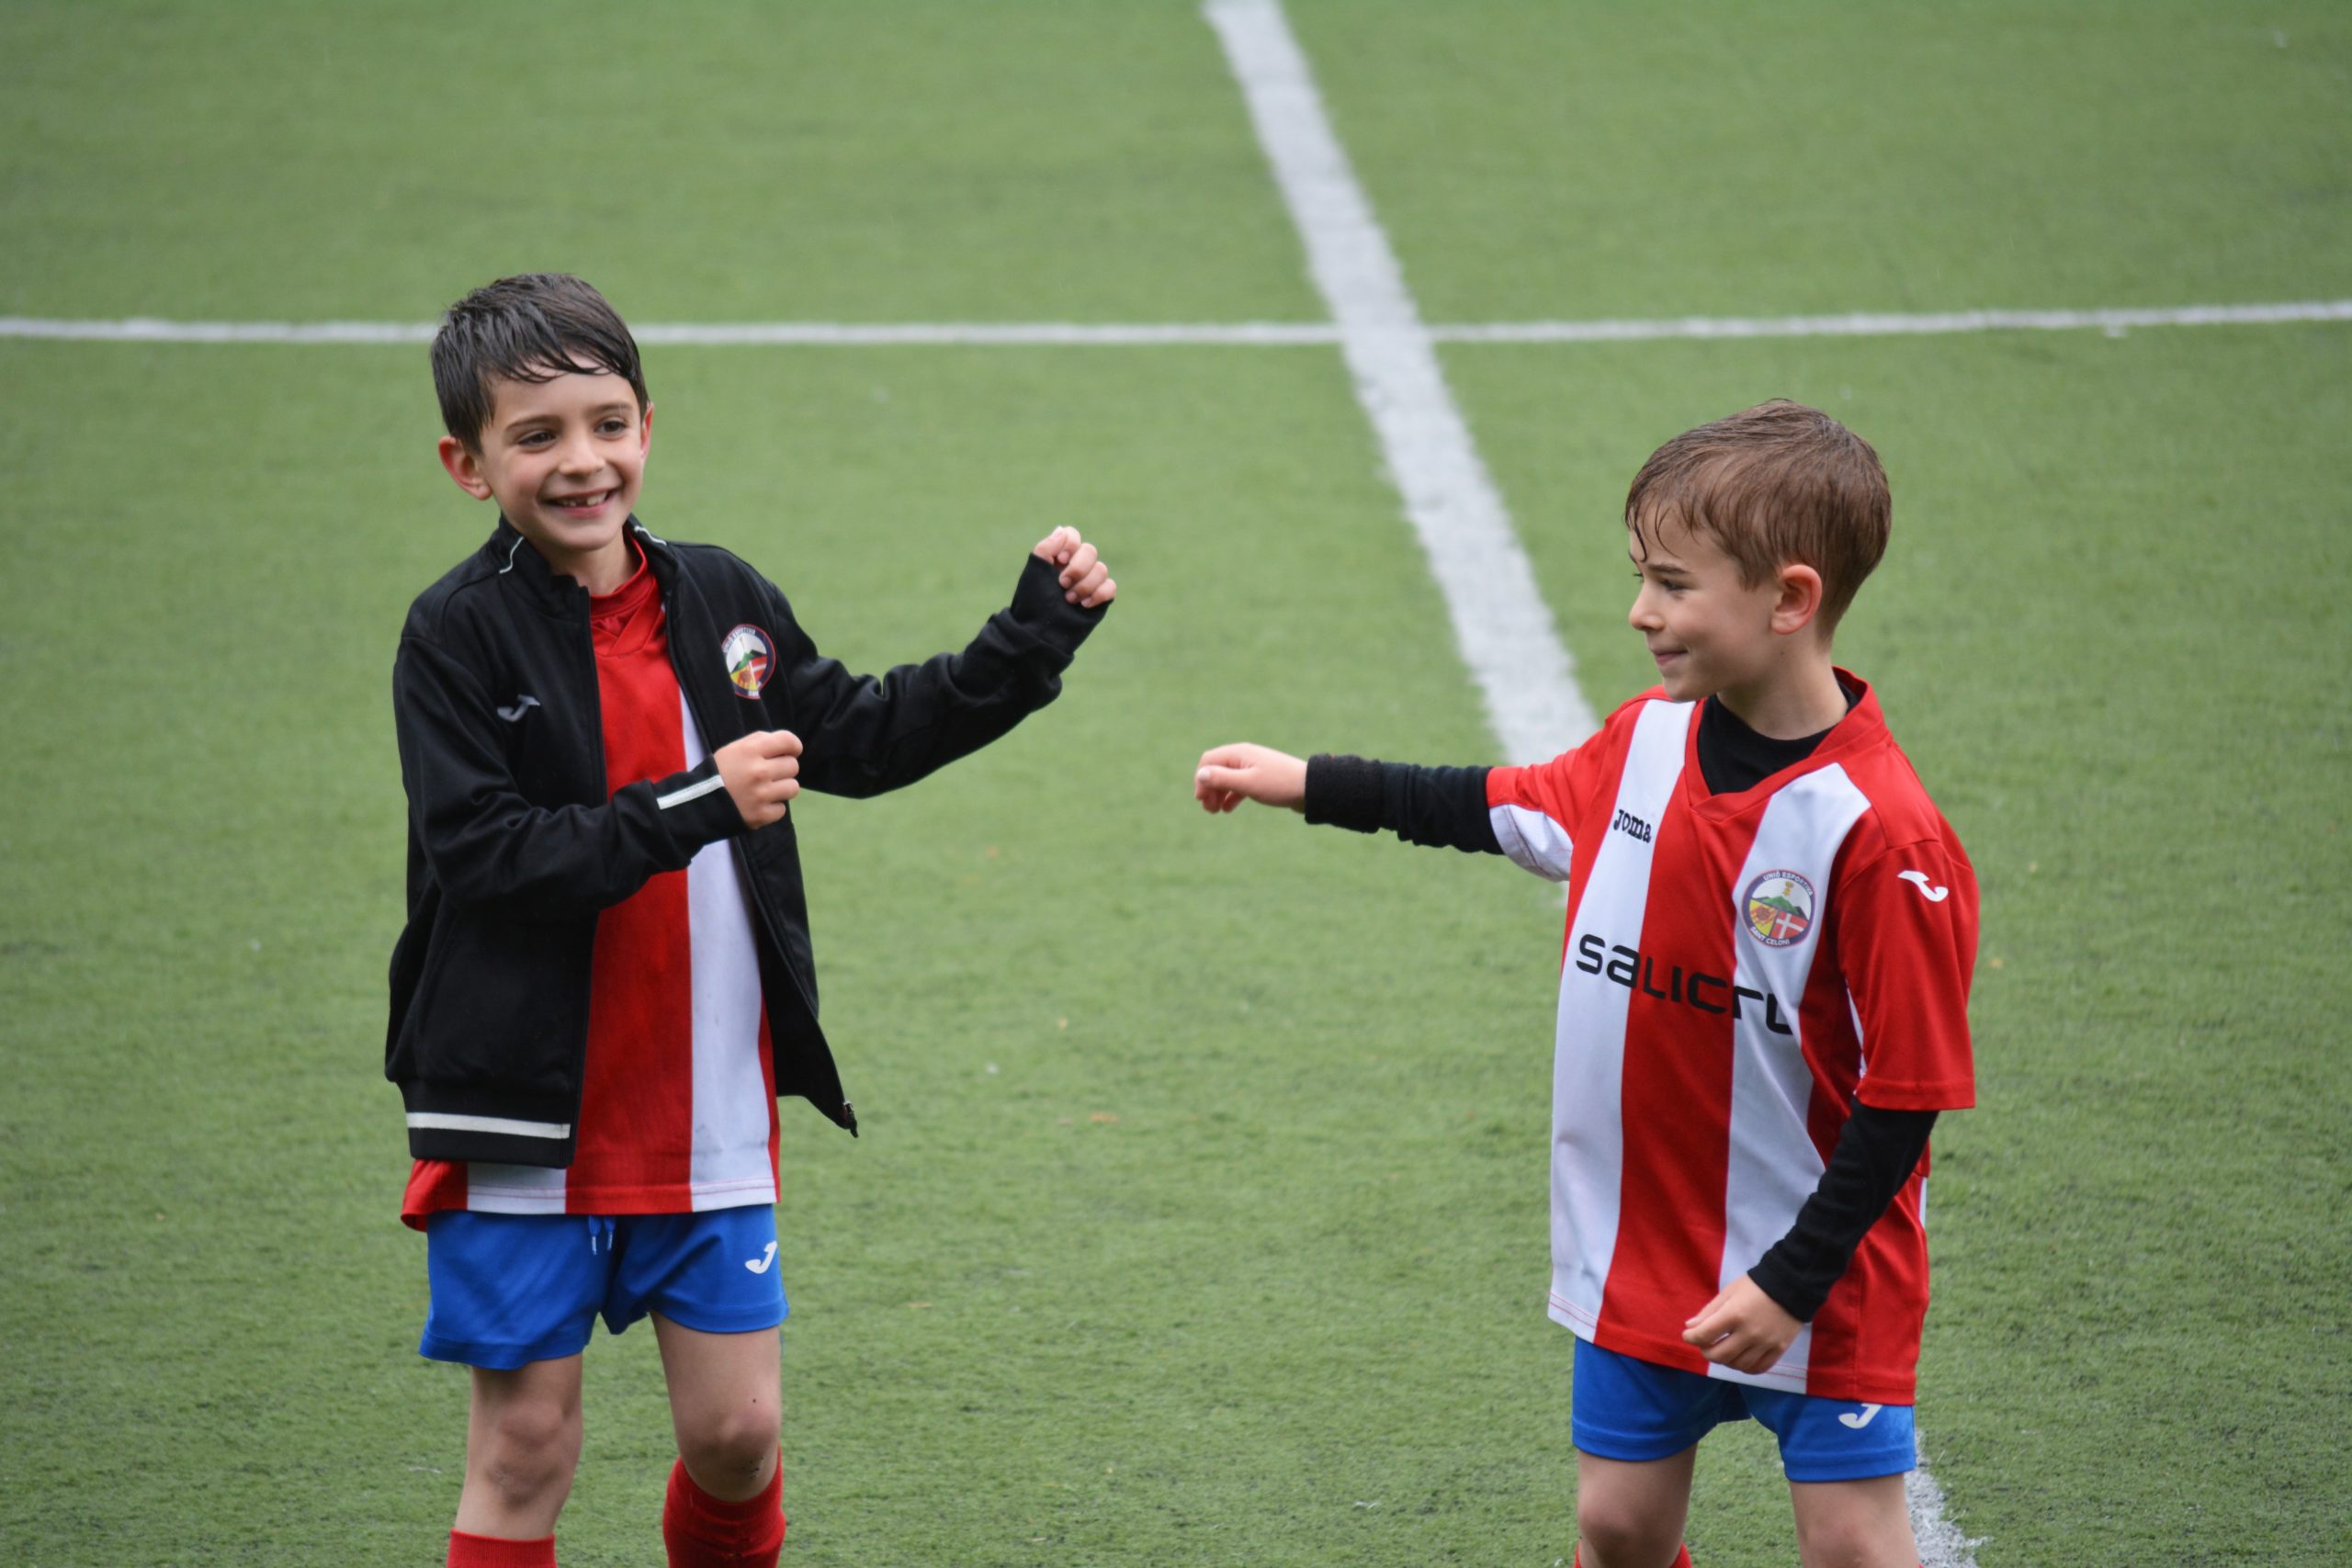 Ragazzi su campo di calcio, articolo di Estrogeni&Partners